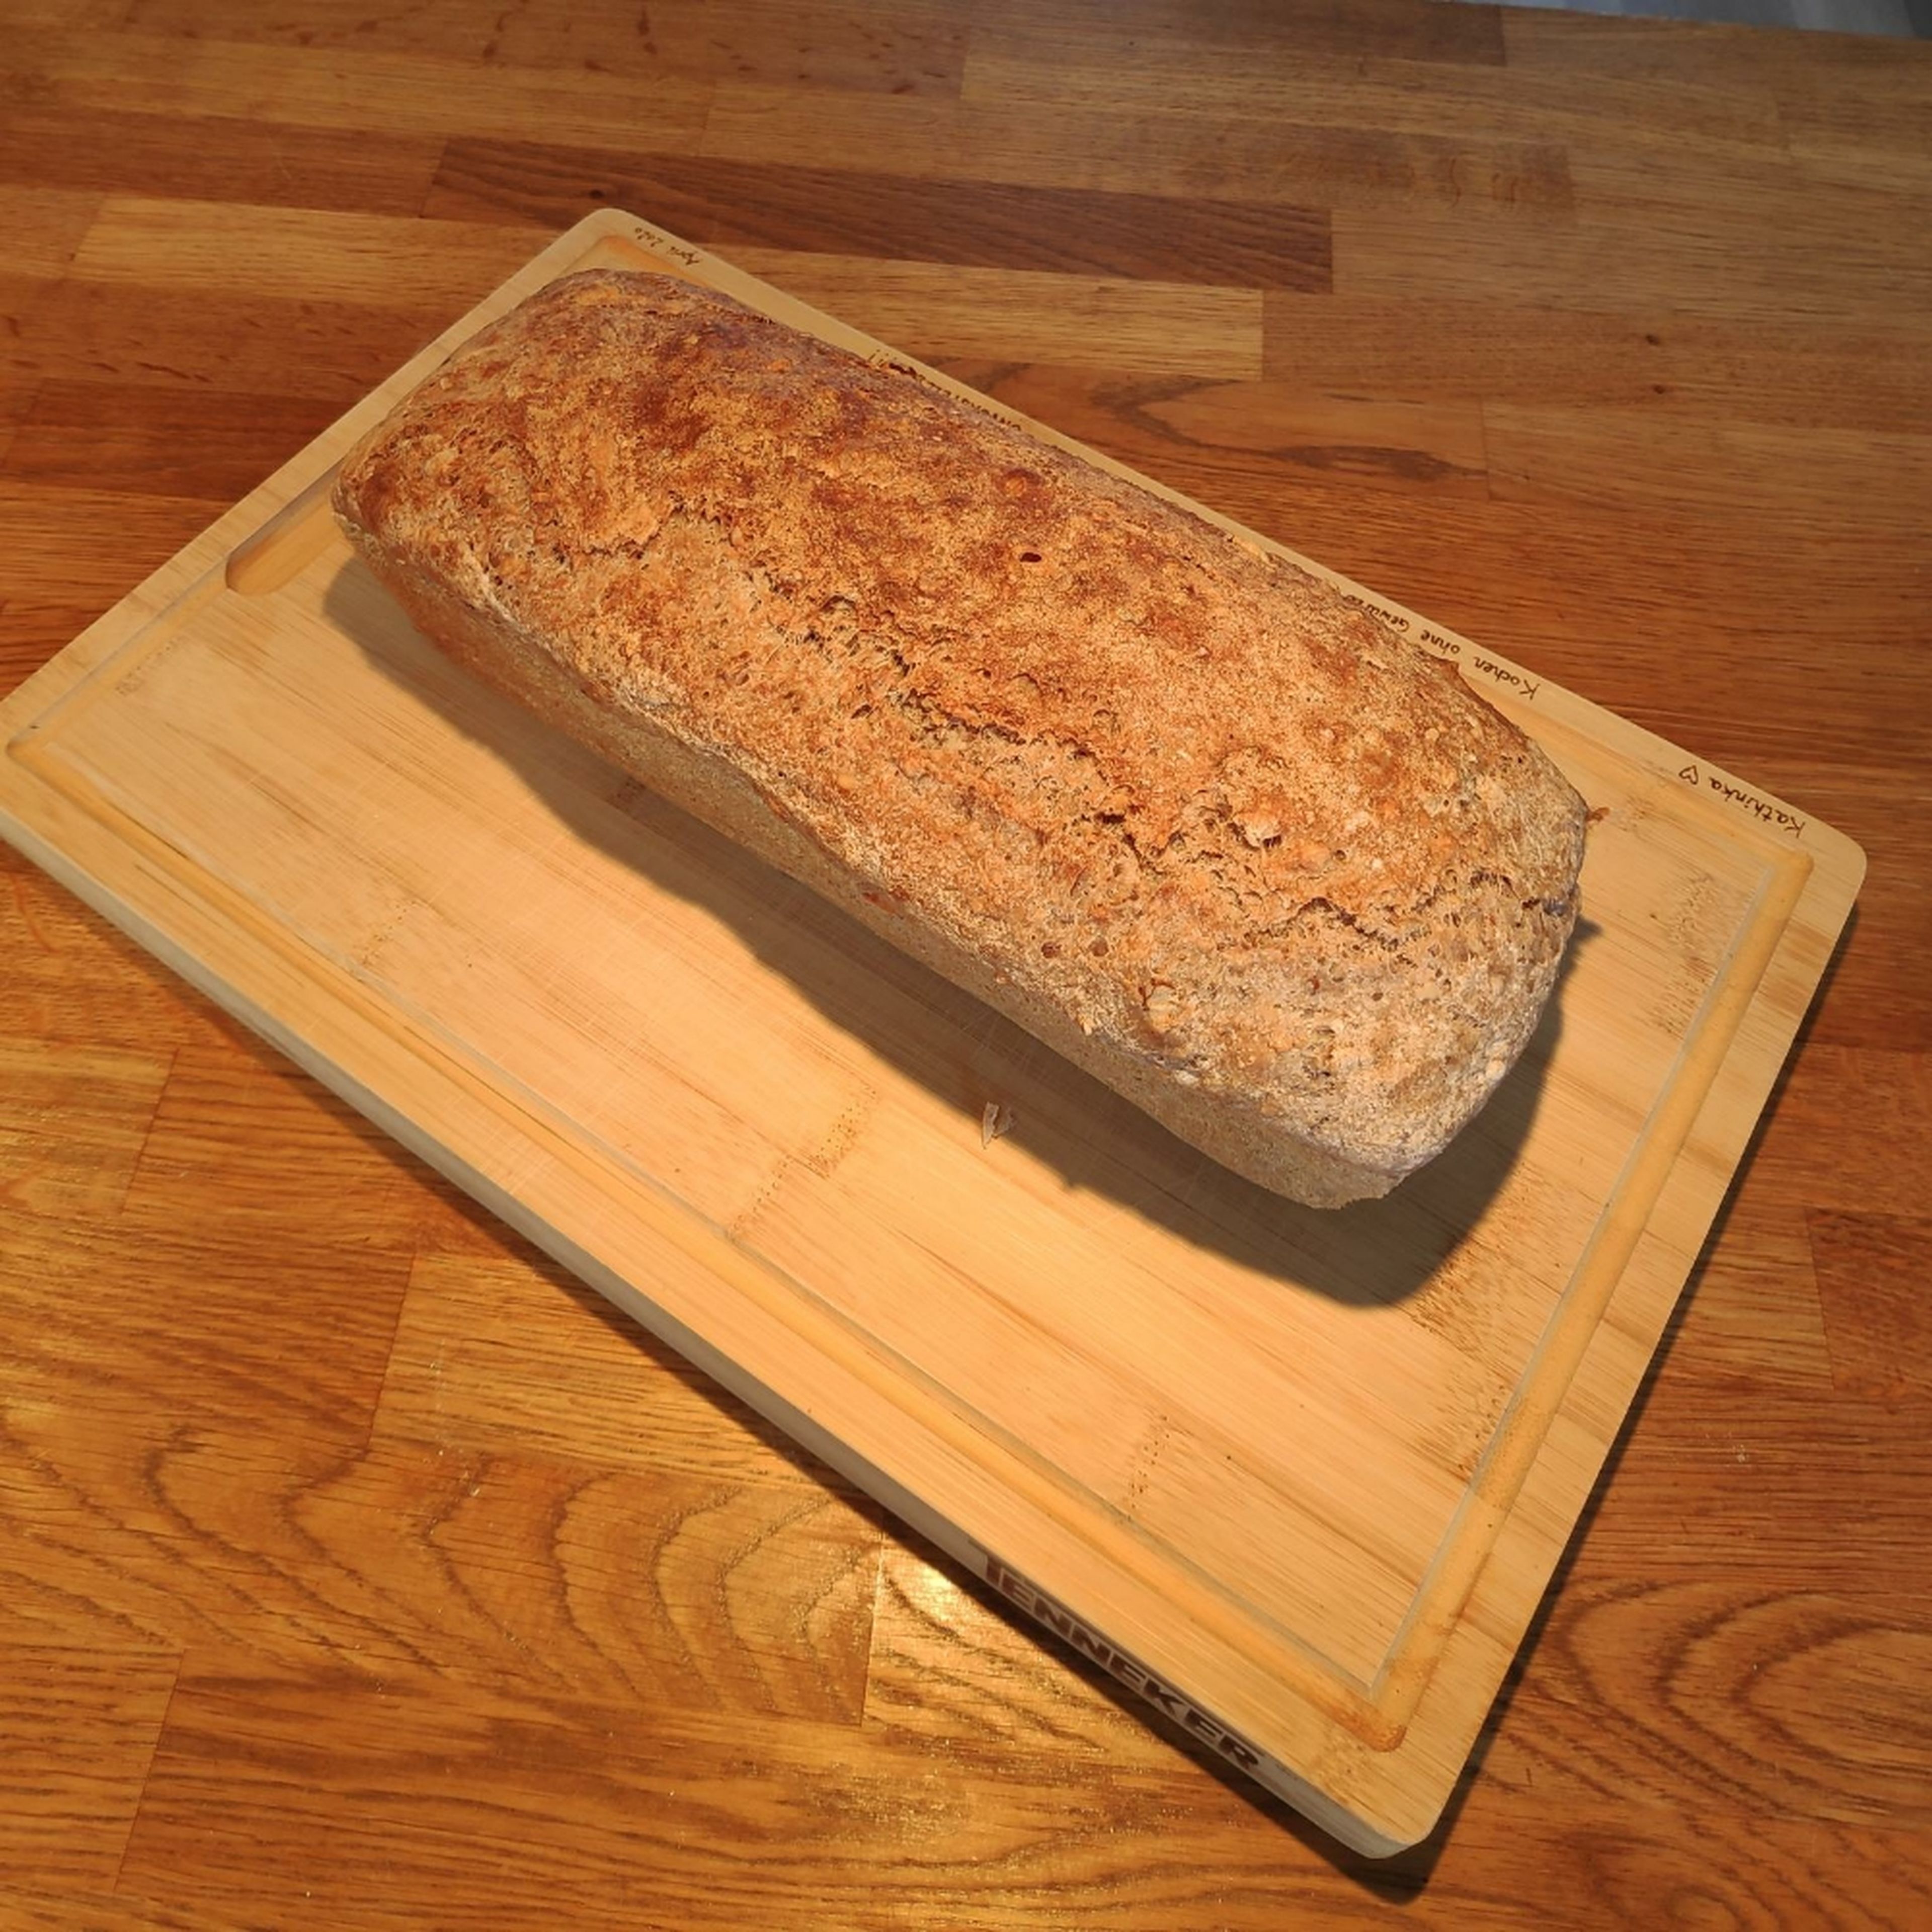 Das Brot nach dem Backen sofort aus der Form nehmen, damit es gut auskühlen kann. Danach kann dieses wunderbare Brot prima auch über mehrere Tage gegessen werden (falls es so lange halten sollte ;-).